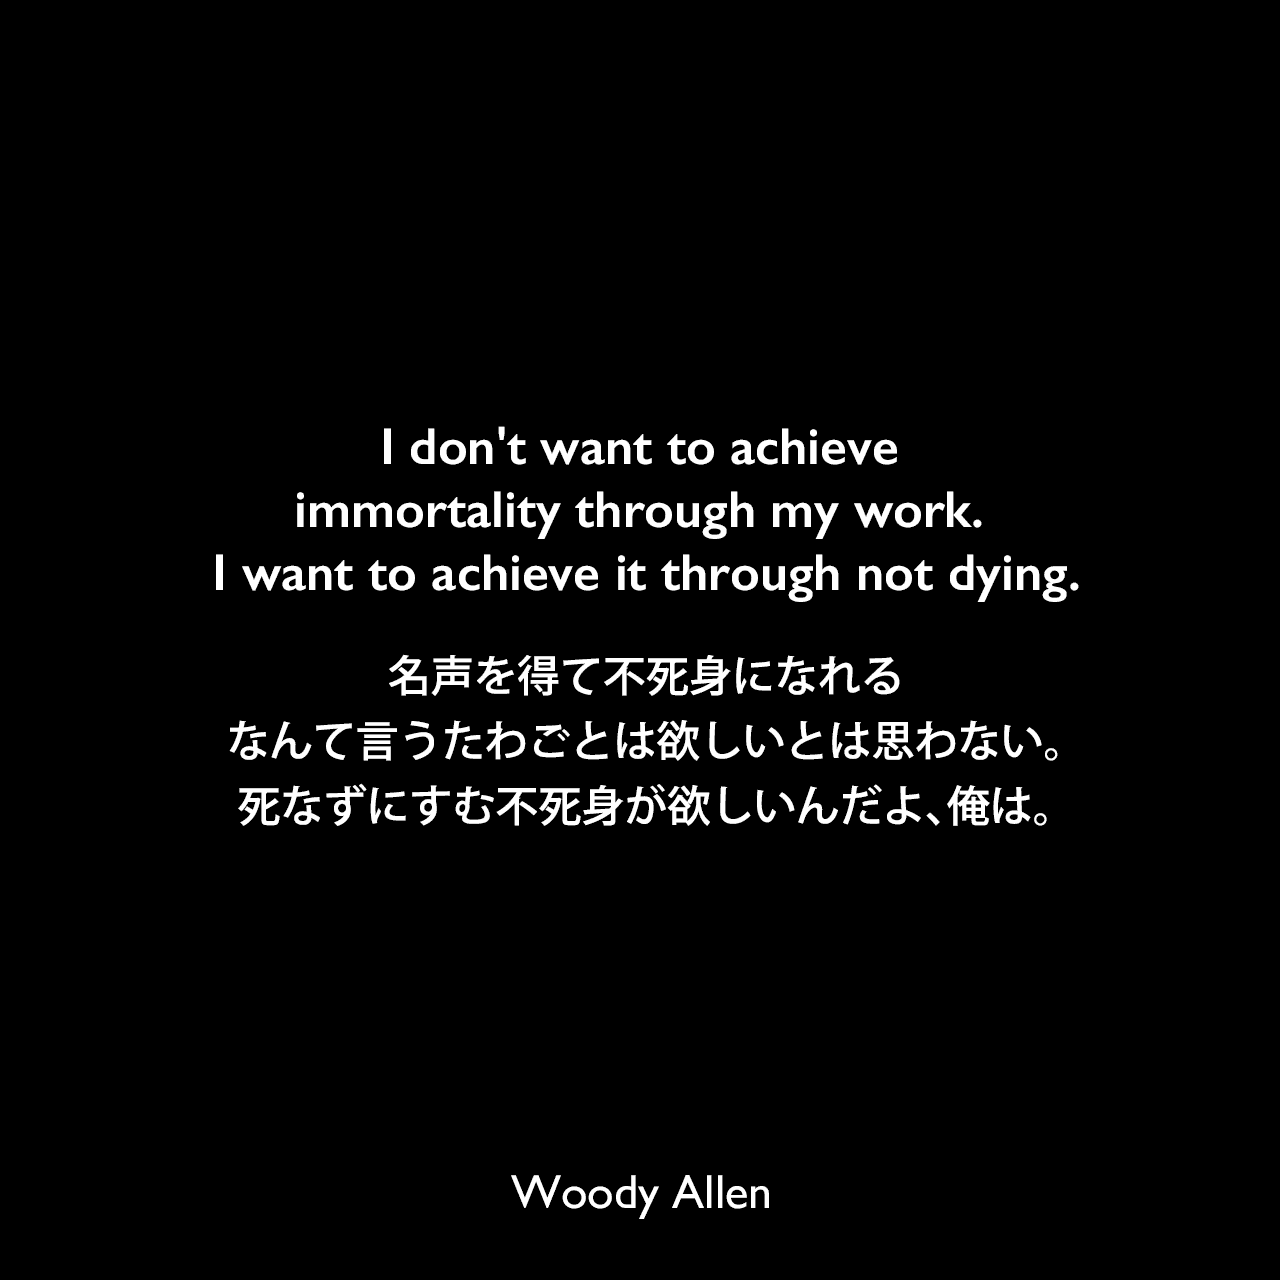 I don't want to achieve immortality through my work. I want to achieve it through not dying.名声を得て不死身になれるなんて言うたわごとは欲しいとは思わない。死なずにすむ不死身が欲しいんだよ、俺は。Woody Allen